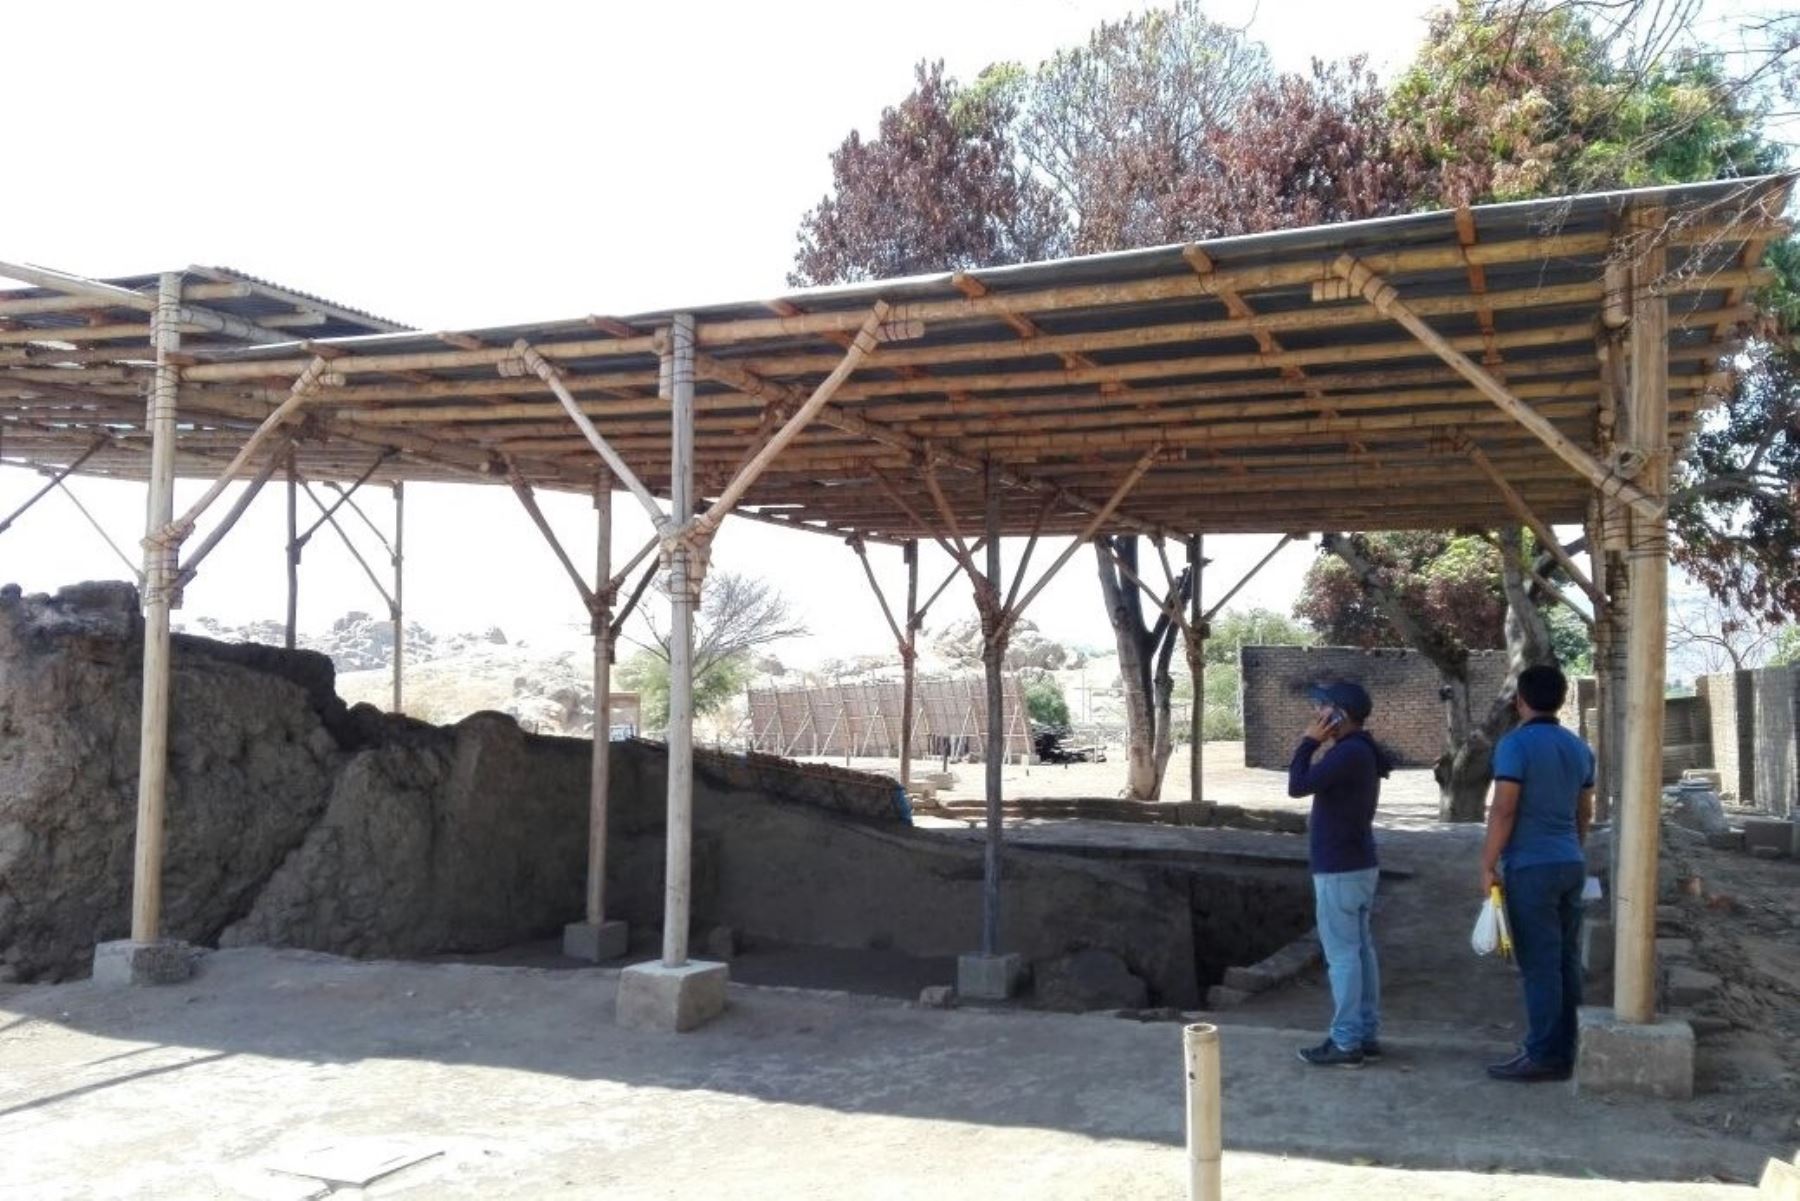 Aceleran trabajos para rehabilitar el complejo arqueológico Ventarrón, en Lambayeque. ANDINA